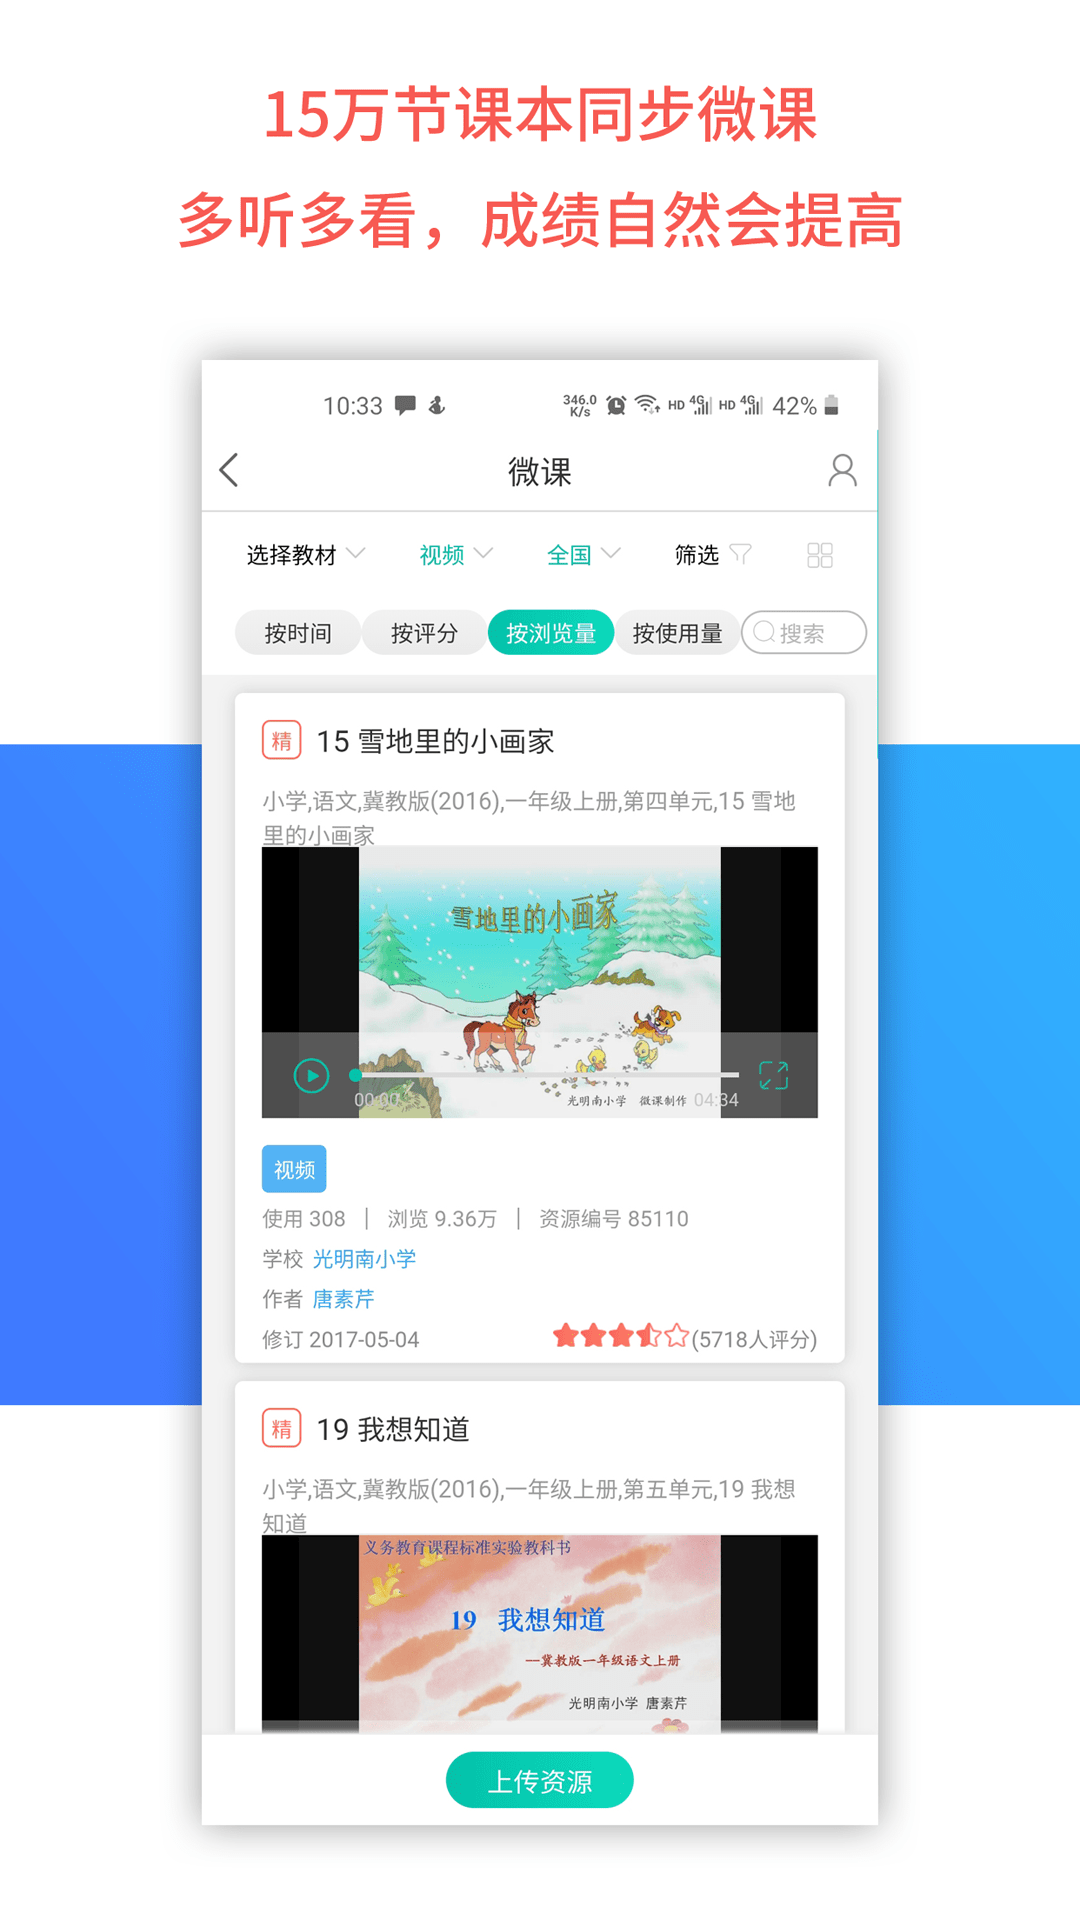 乐教乐学app 1.0.2641.0.264